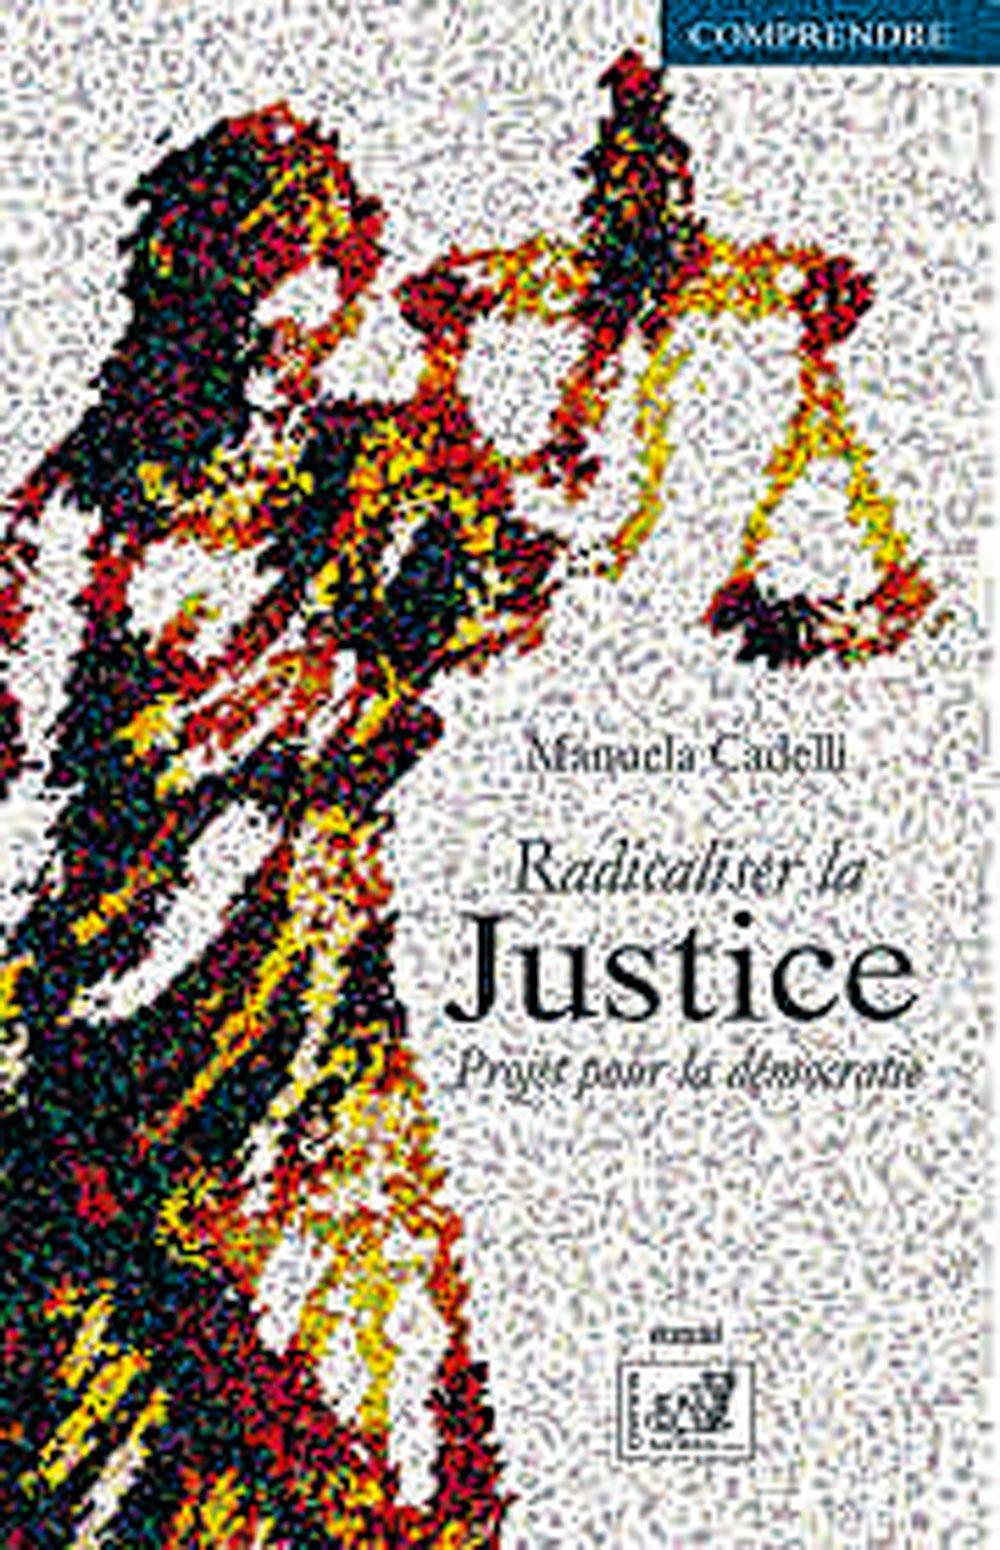 (1) Radicaliser la justice, par Manuela Cadelli, éd. Samsa, 386 p.